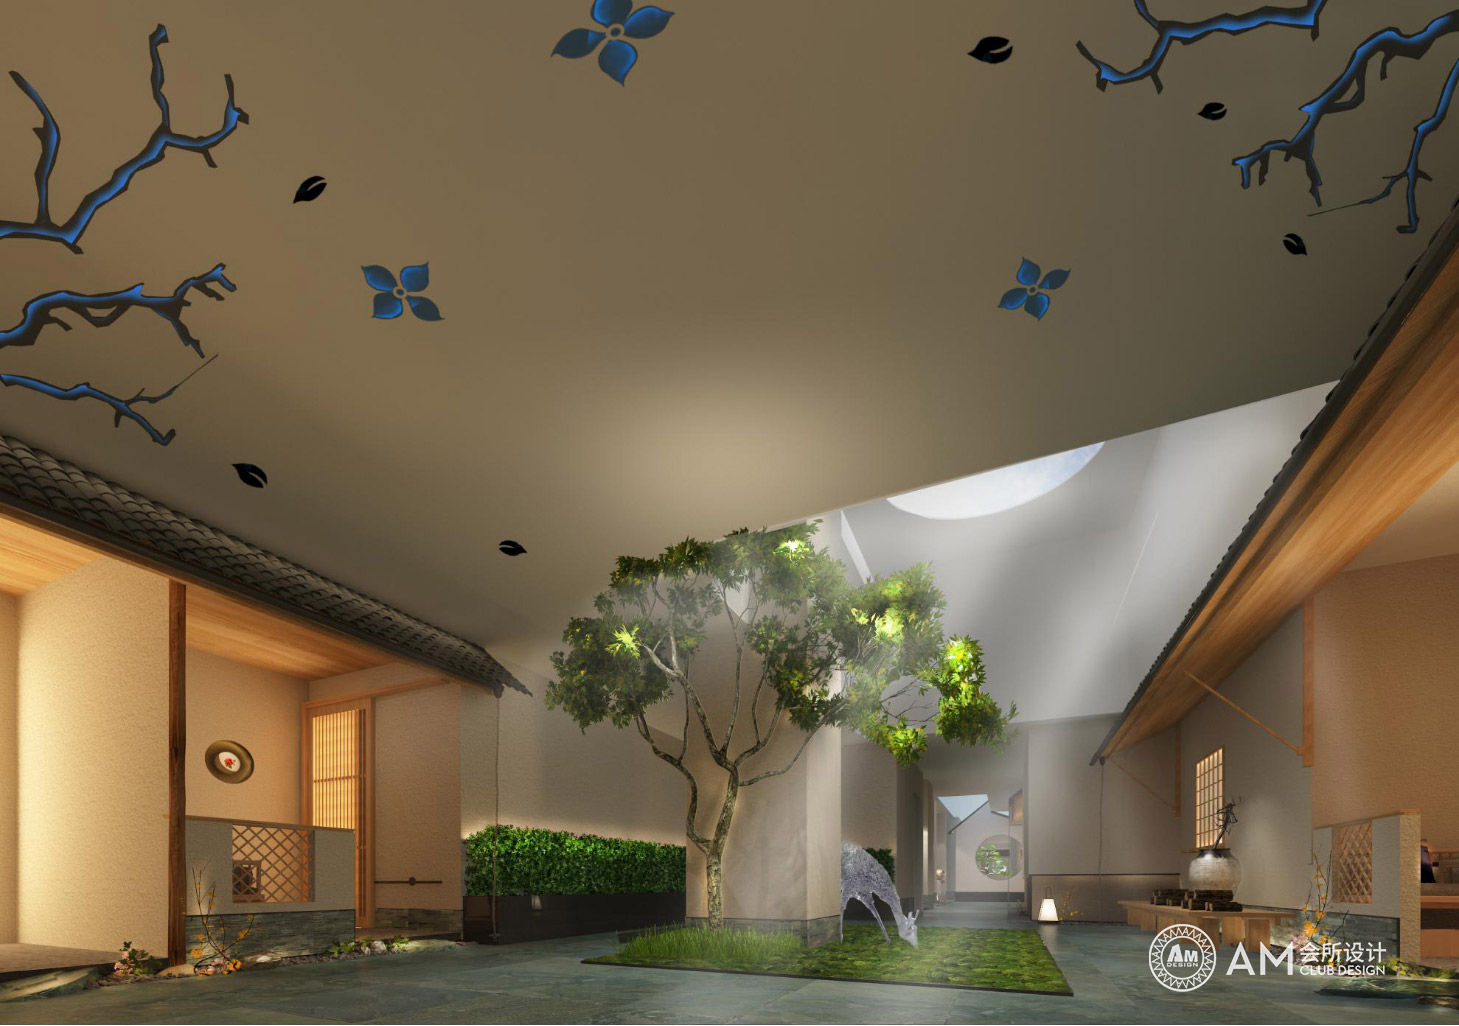 AM DESIGN | Atrium design of spa club in Sijihuacheng